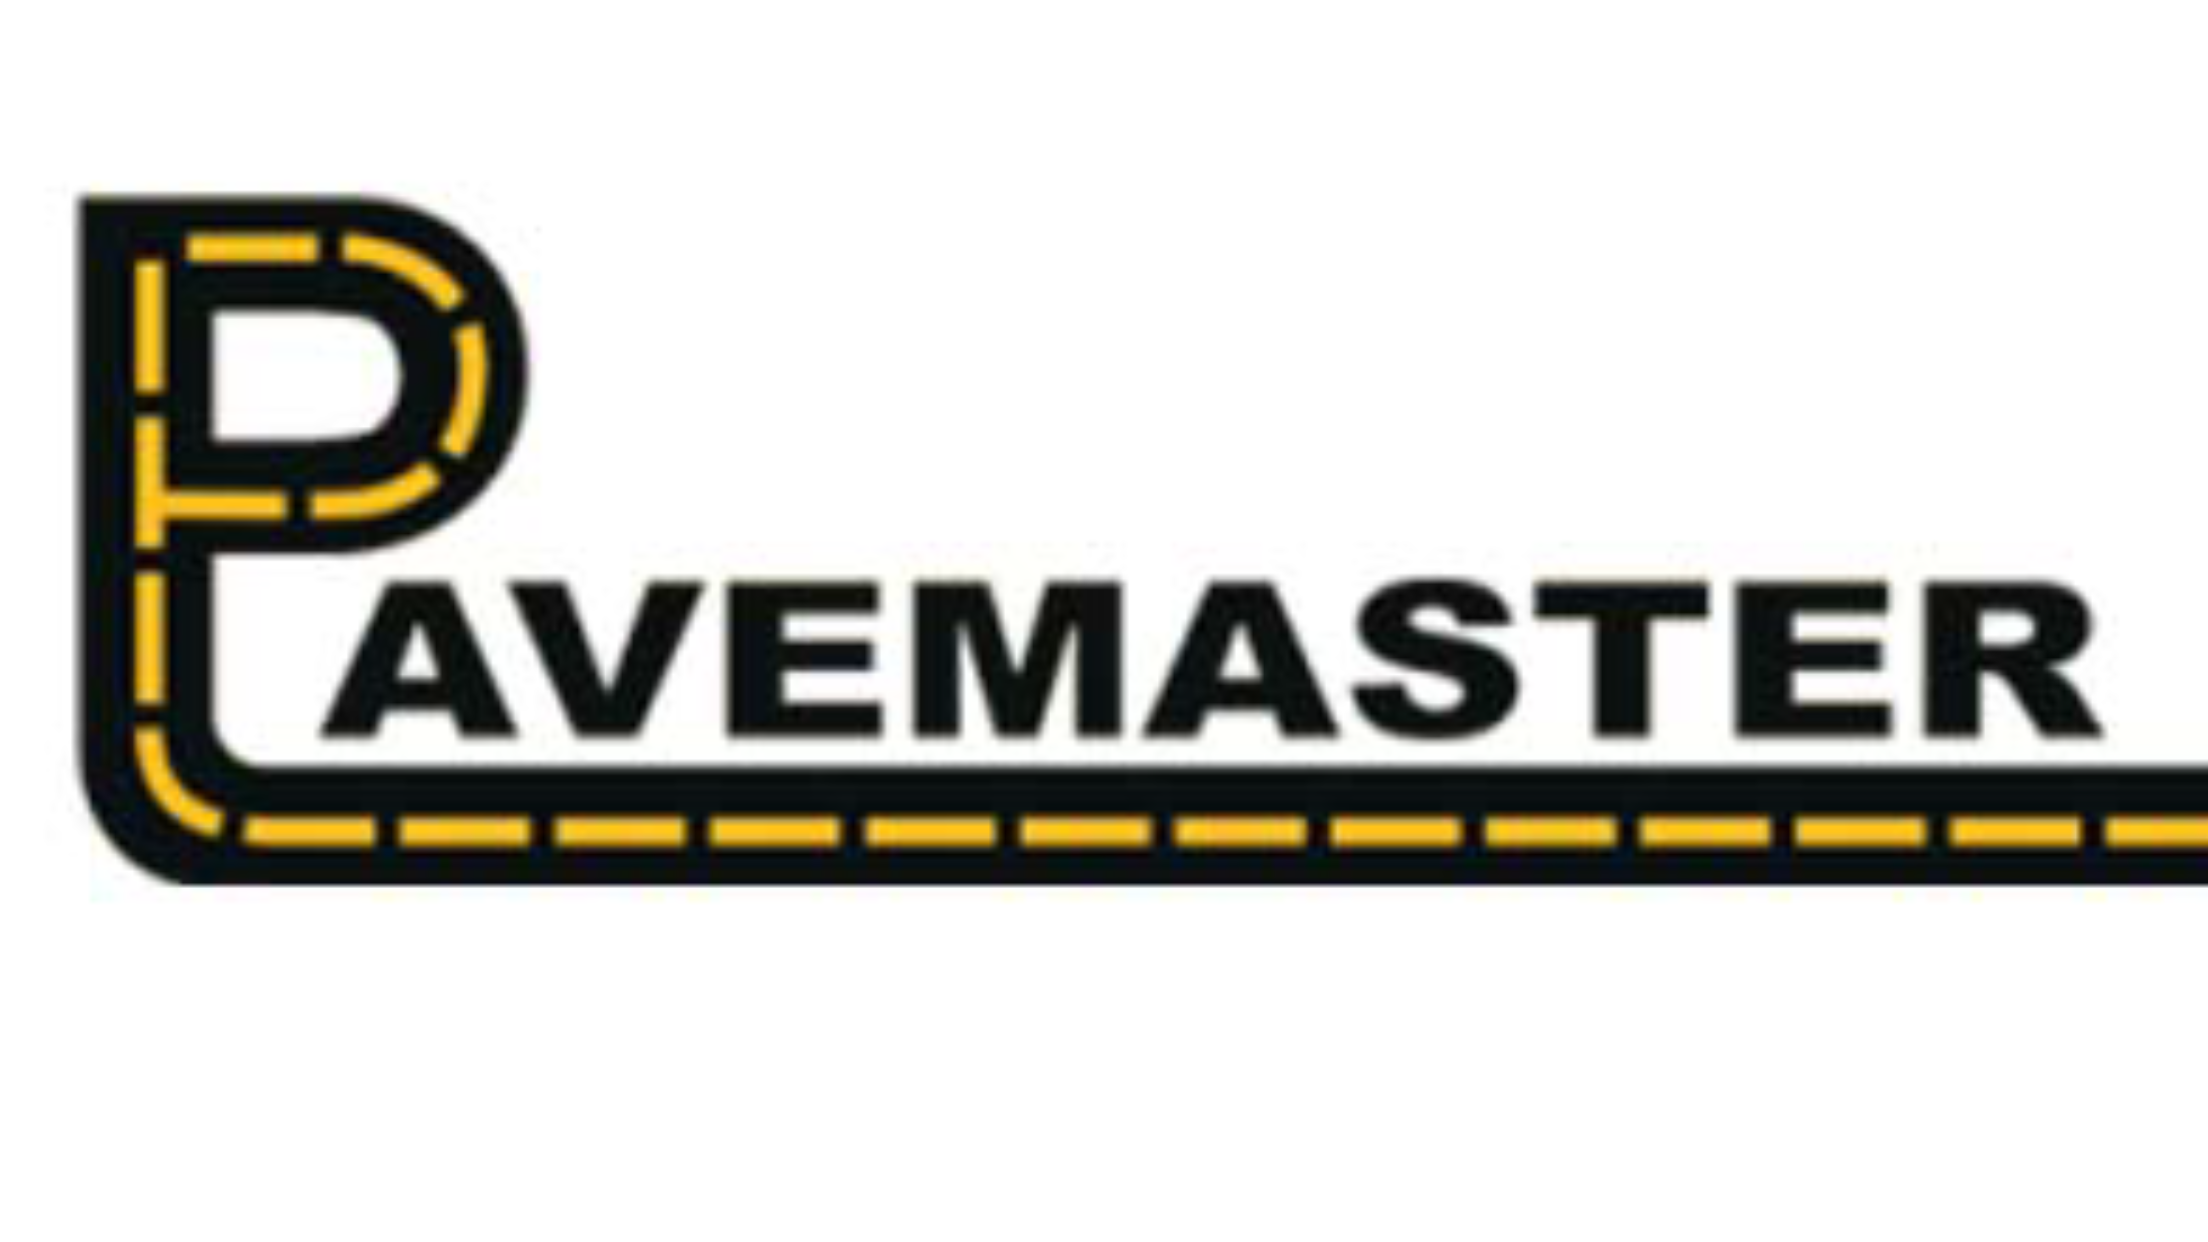 Pavemasters Logo